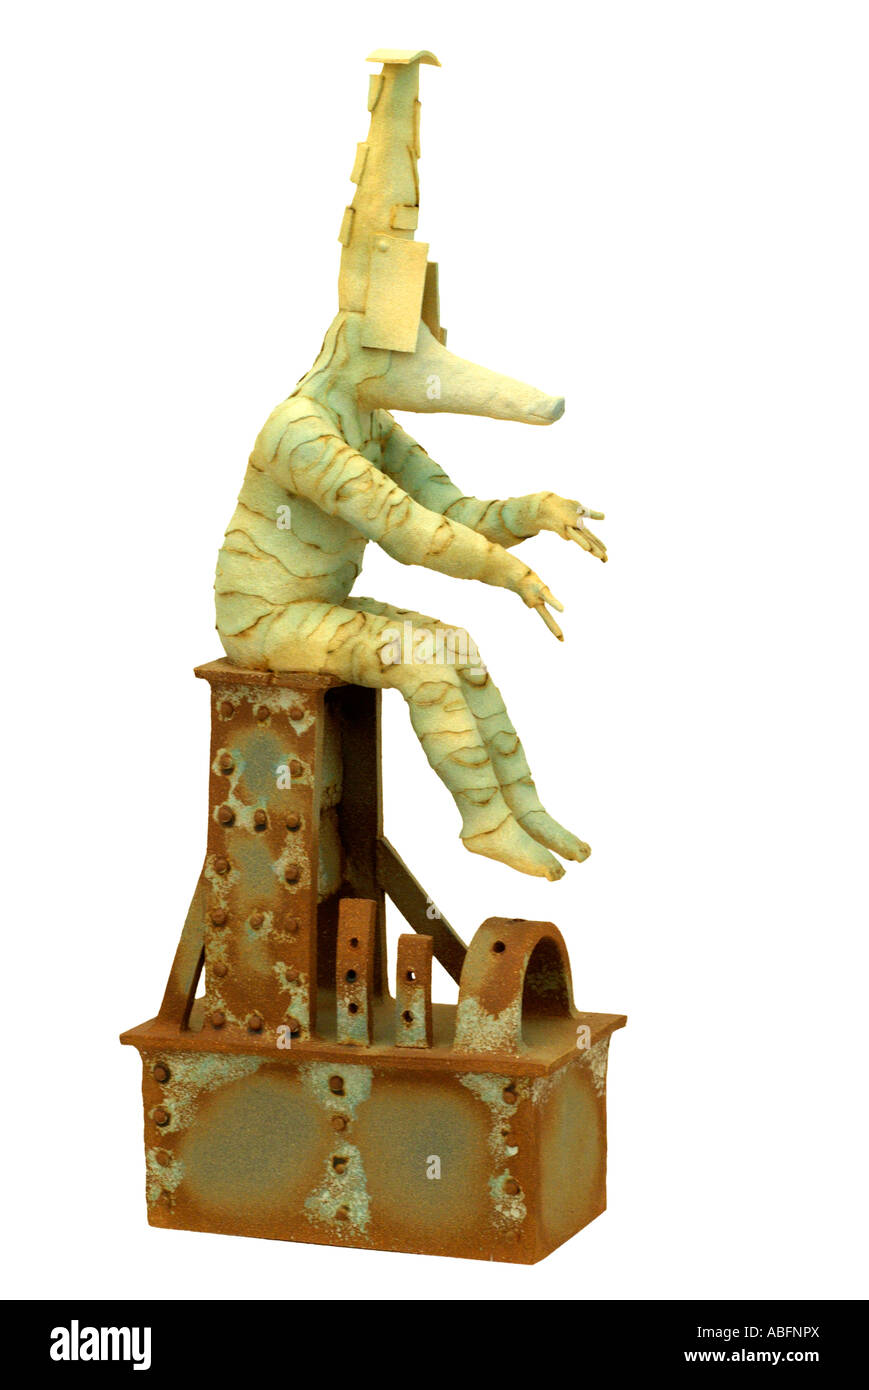 Fantasy figura figurilla otro mundo mundano estatua escultural híbrido humanoide gripe mecánica tecnología tecno ornamento orname Foto de stock